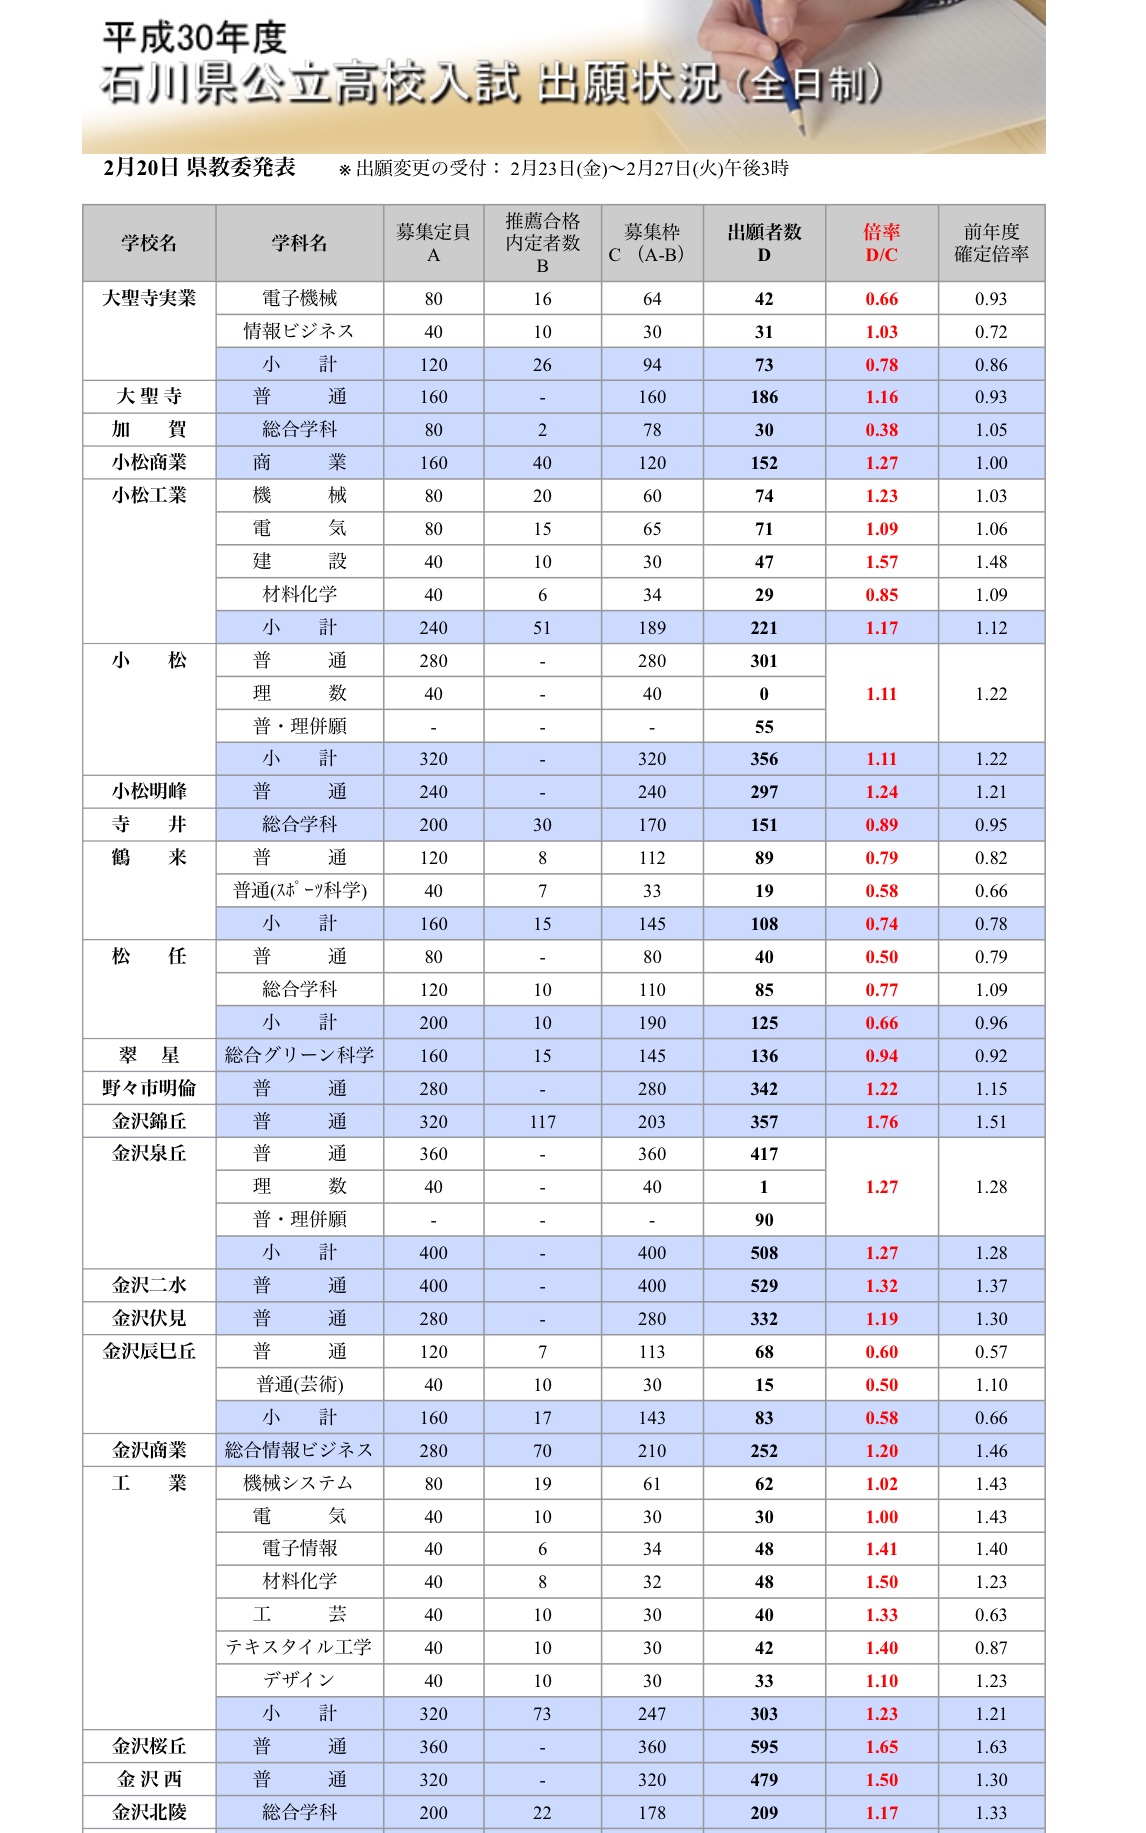 平成30年度 公立高校入試の中間倍率が発表されました 石川県金沢市で不登校に取り組むみんなの家庭教師